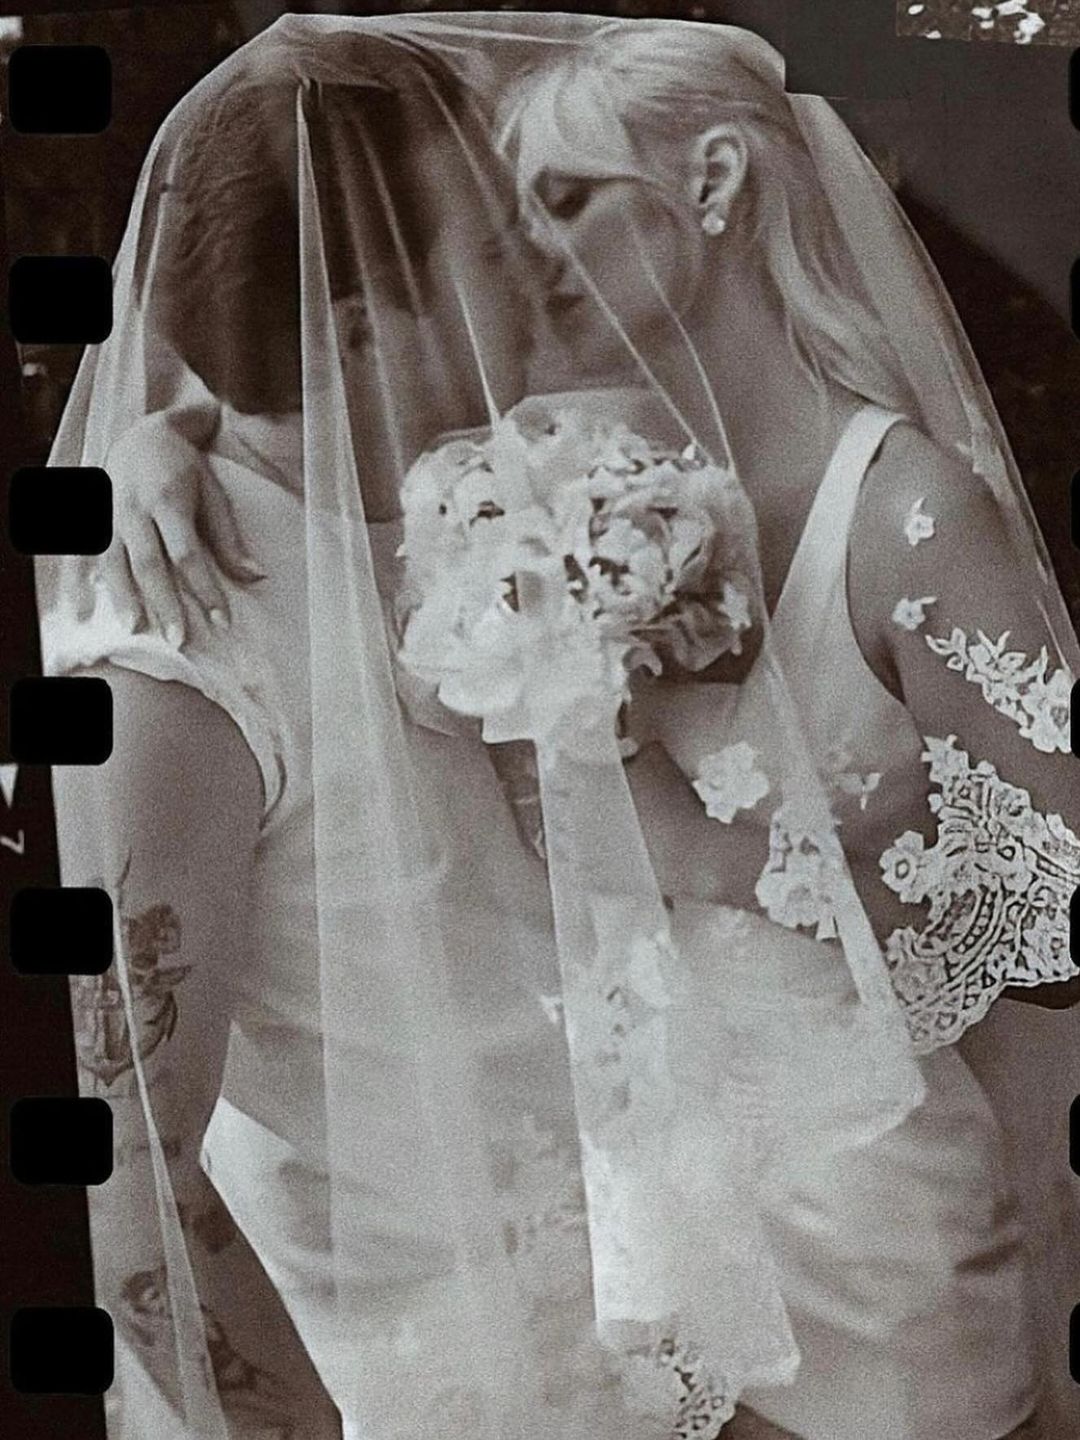 Nicola and Brooklyn Peltz-Beckham share a kiss under a veil